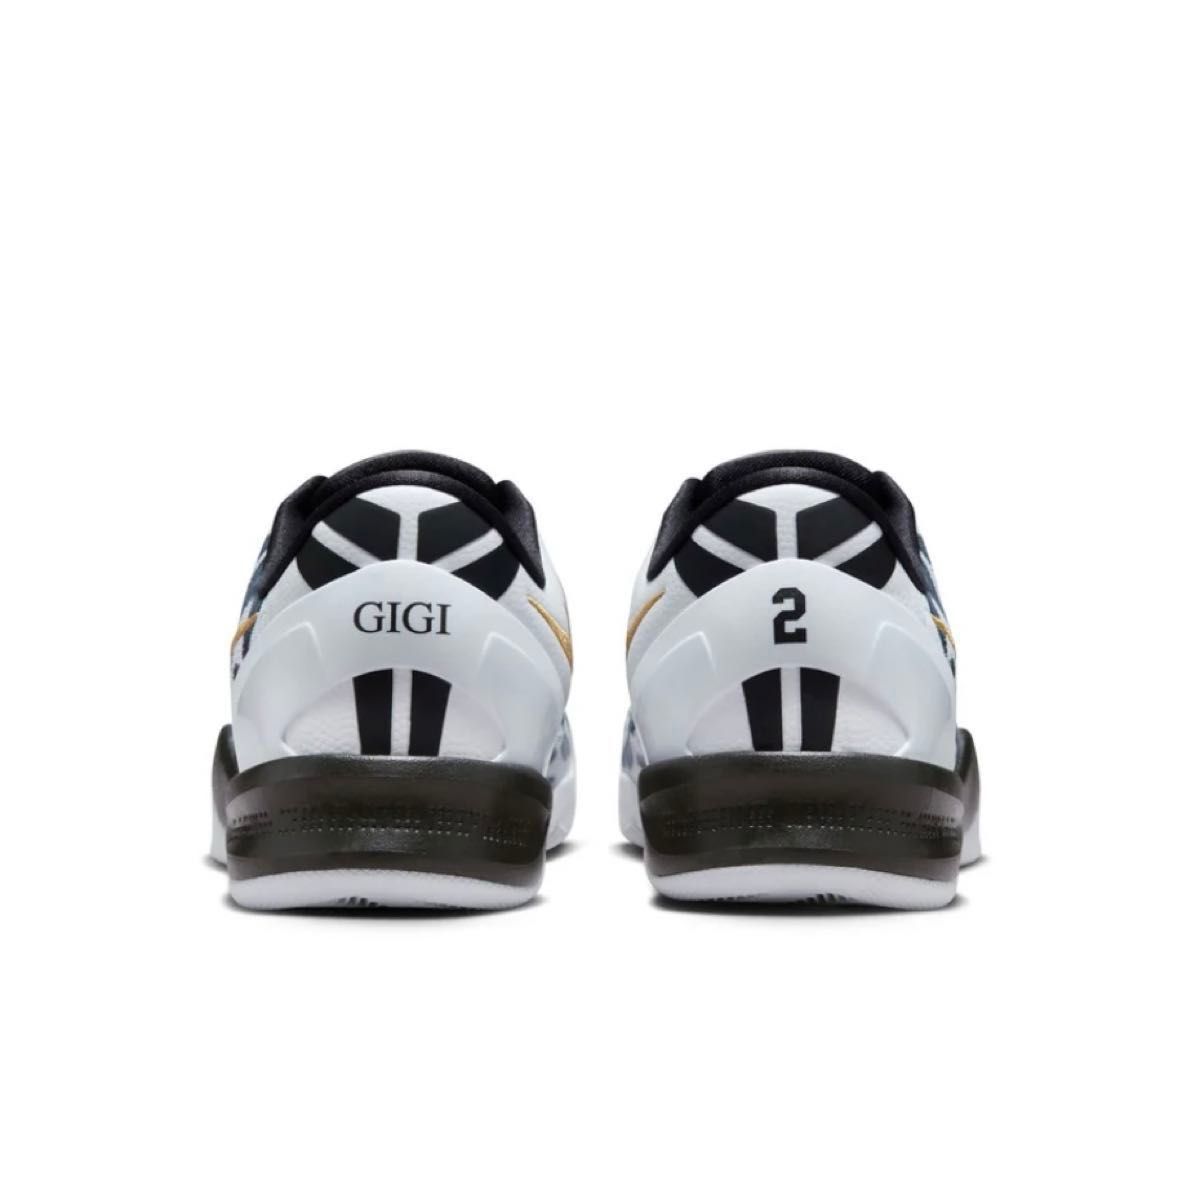 Nike Kobe 8 Protro "Mambacita" GIGI FV6235-100